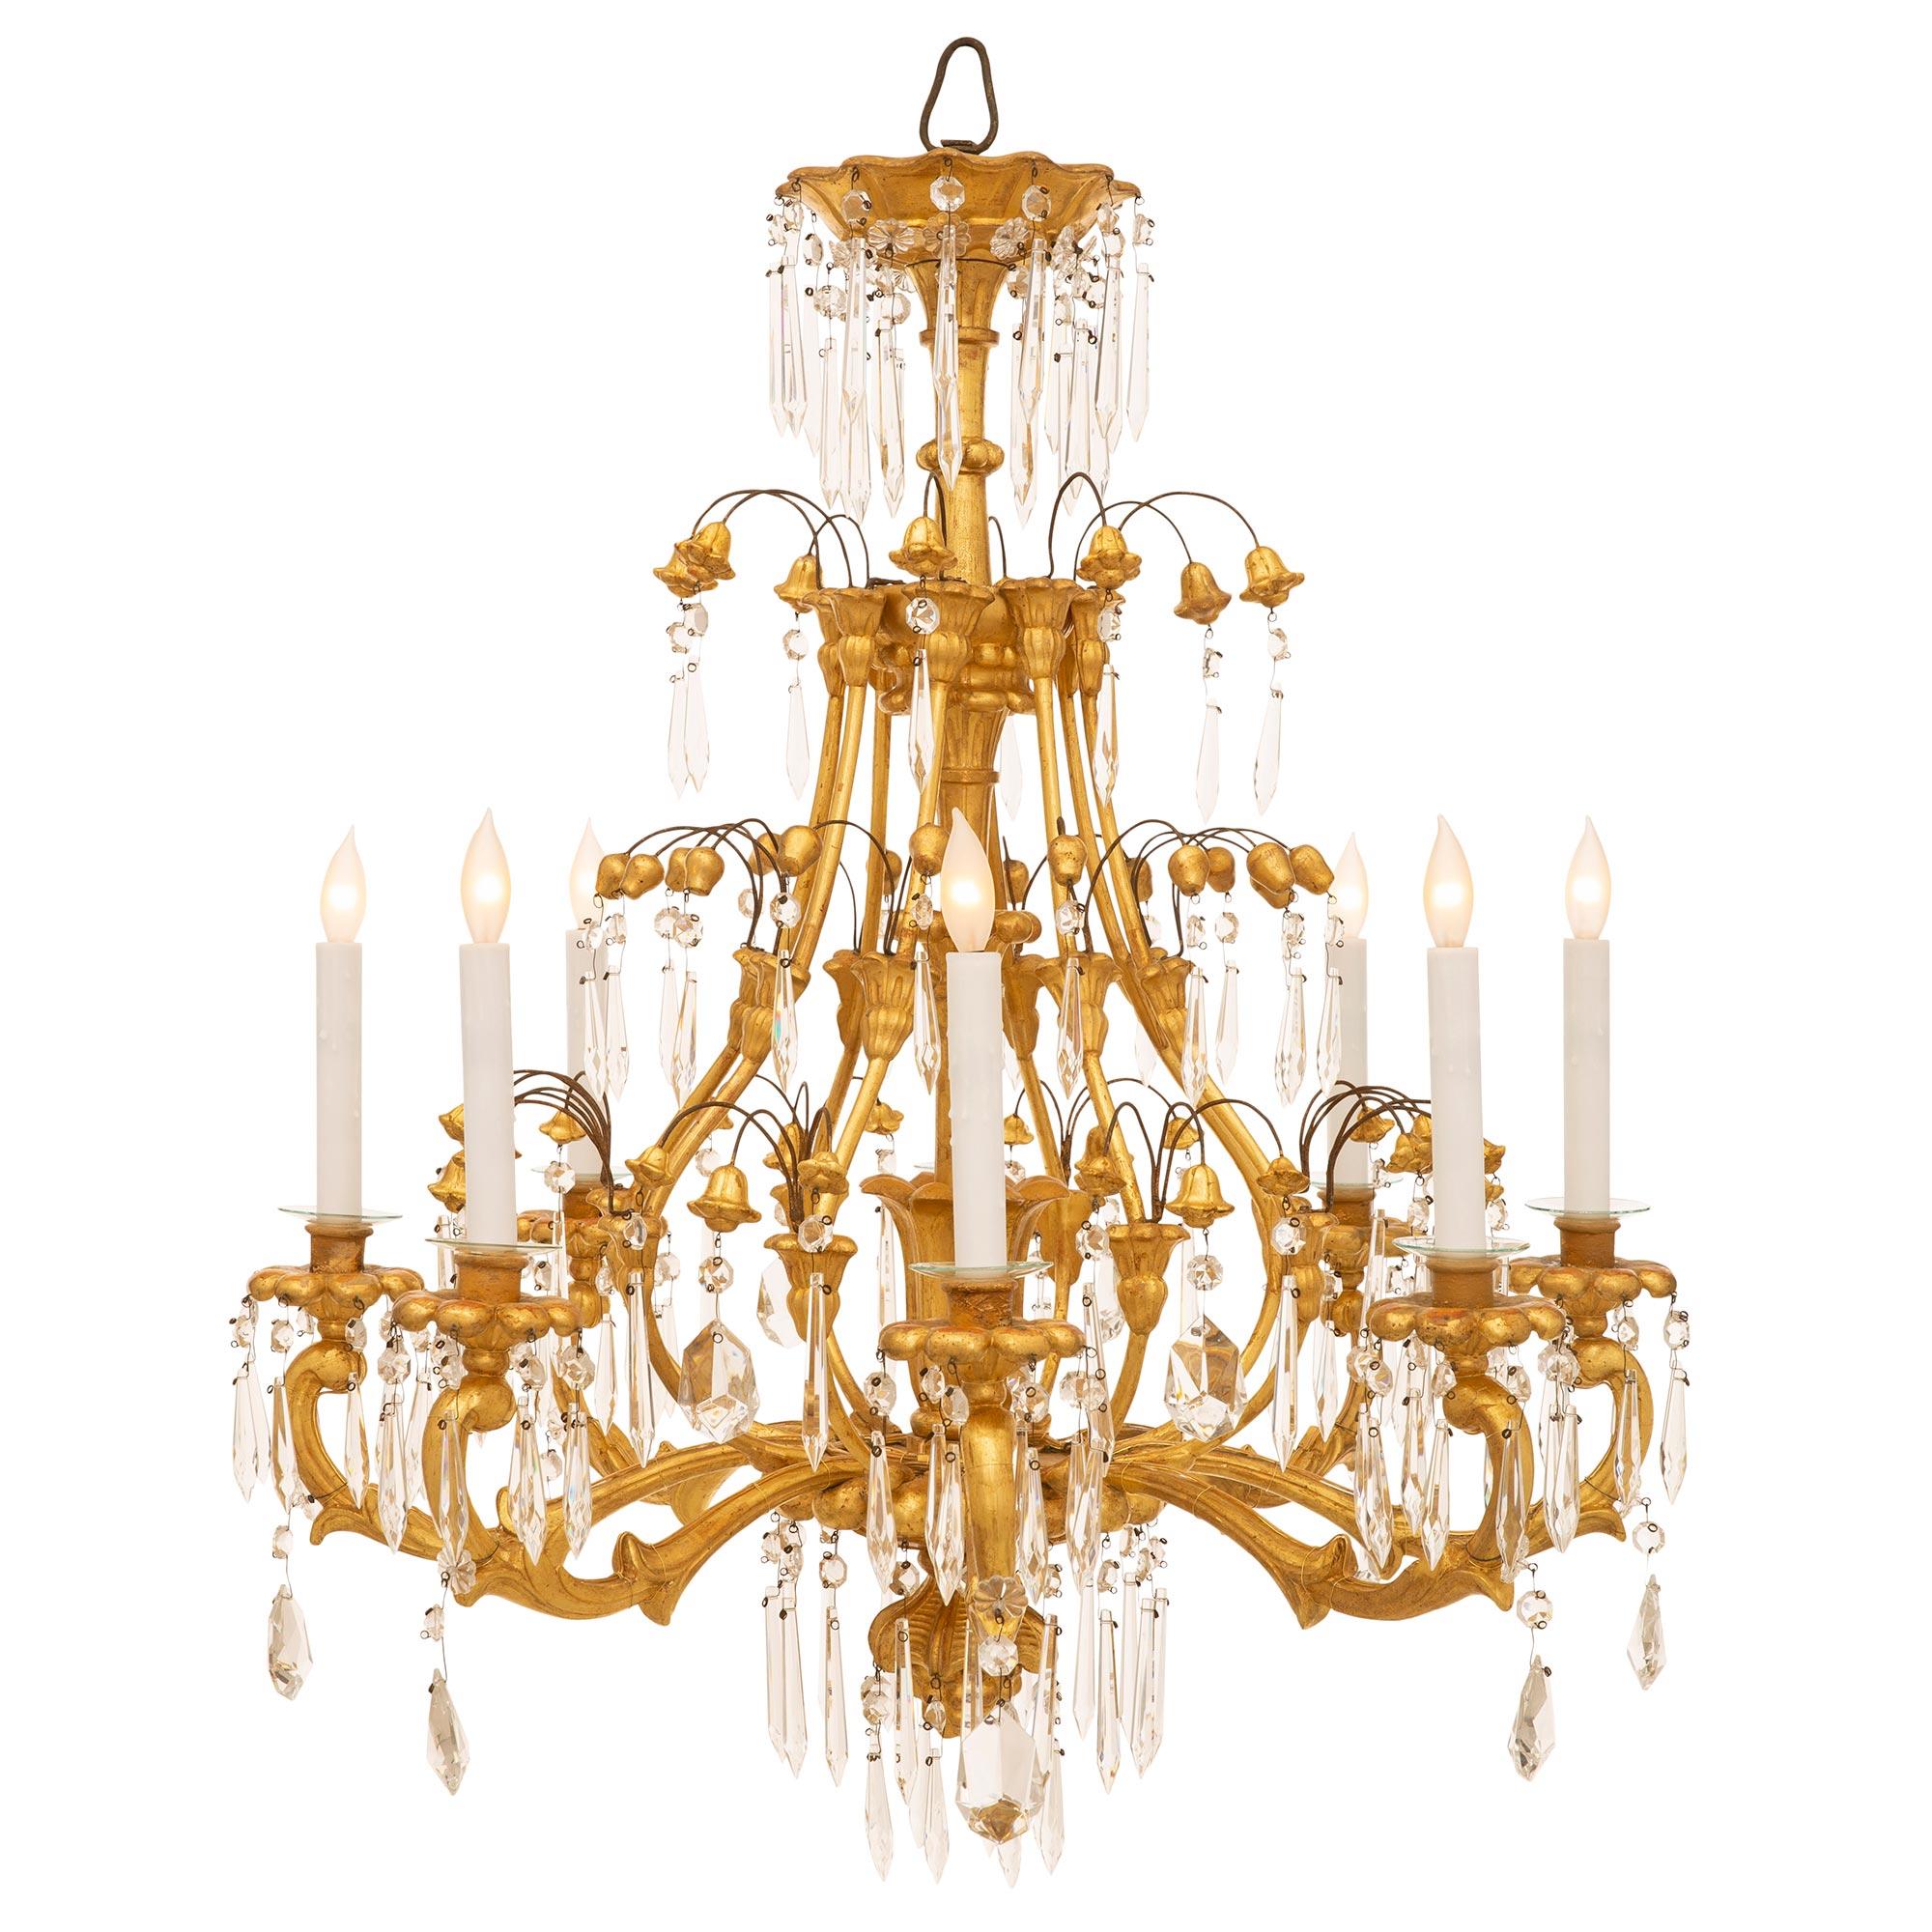 Magnifique et extrêmement décoratif lustre en bois doré et cristal de style vénitien du XIXe siècle. Le lustre à huit bras est centré par un charmant et unique fleuron en forme de feuillage avec des pendentifs en cristal taillé en prisme et des